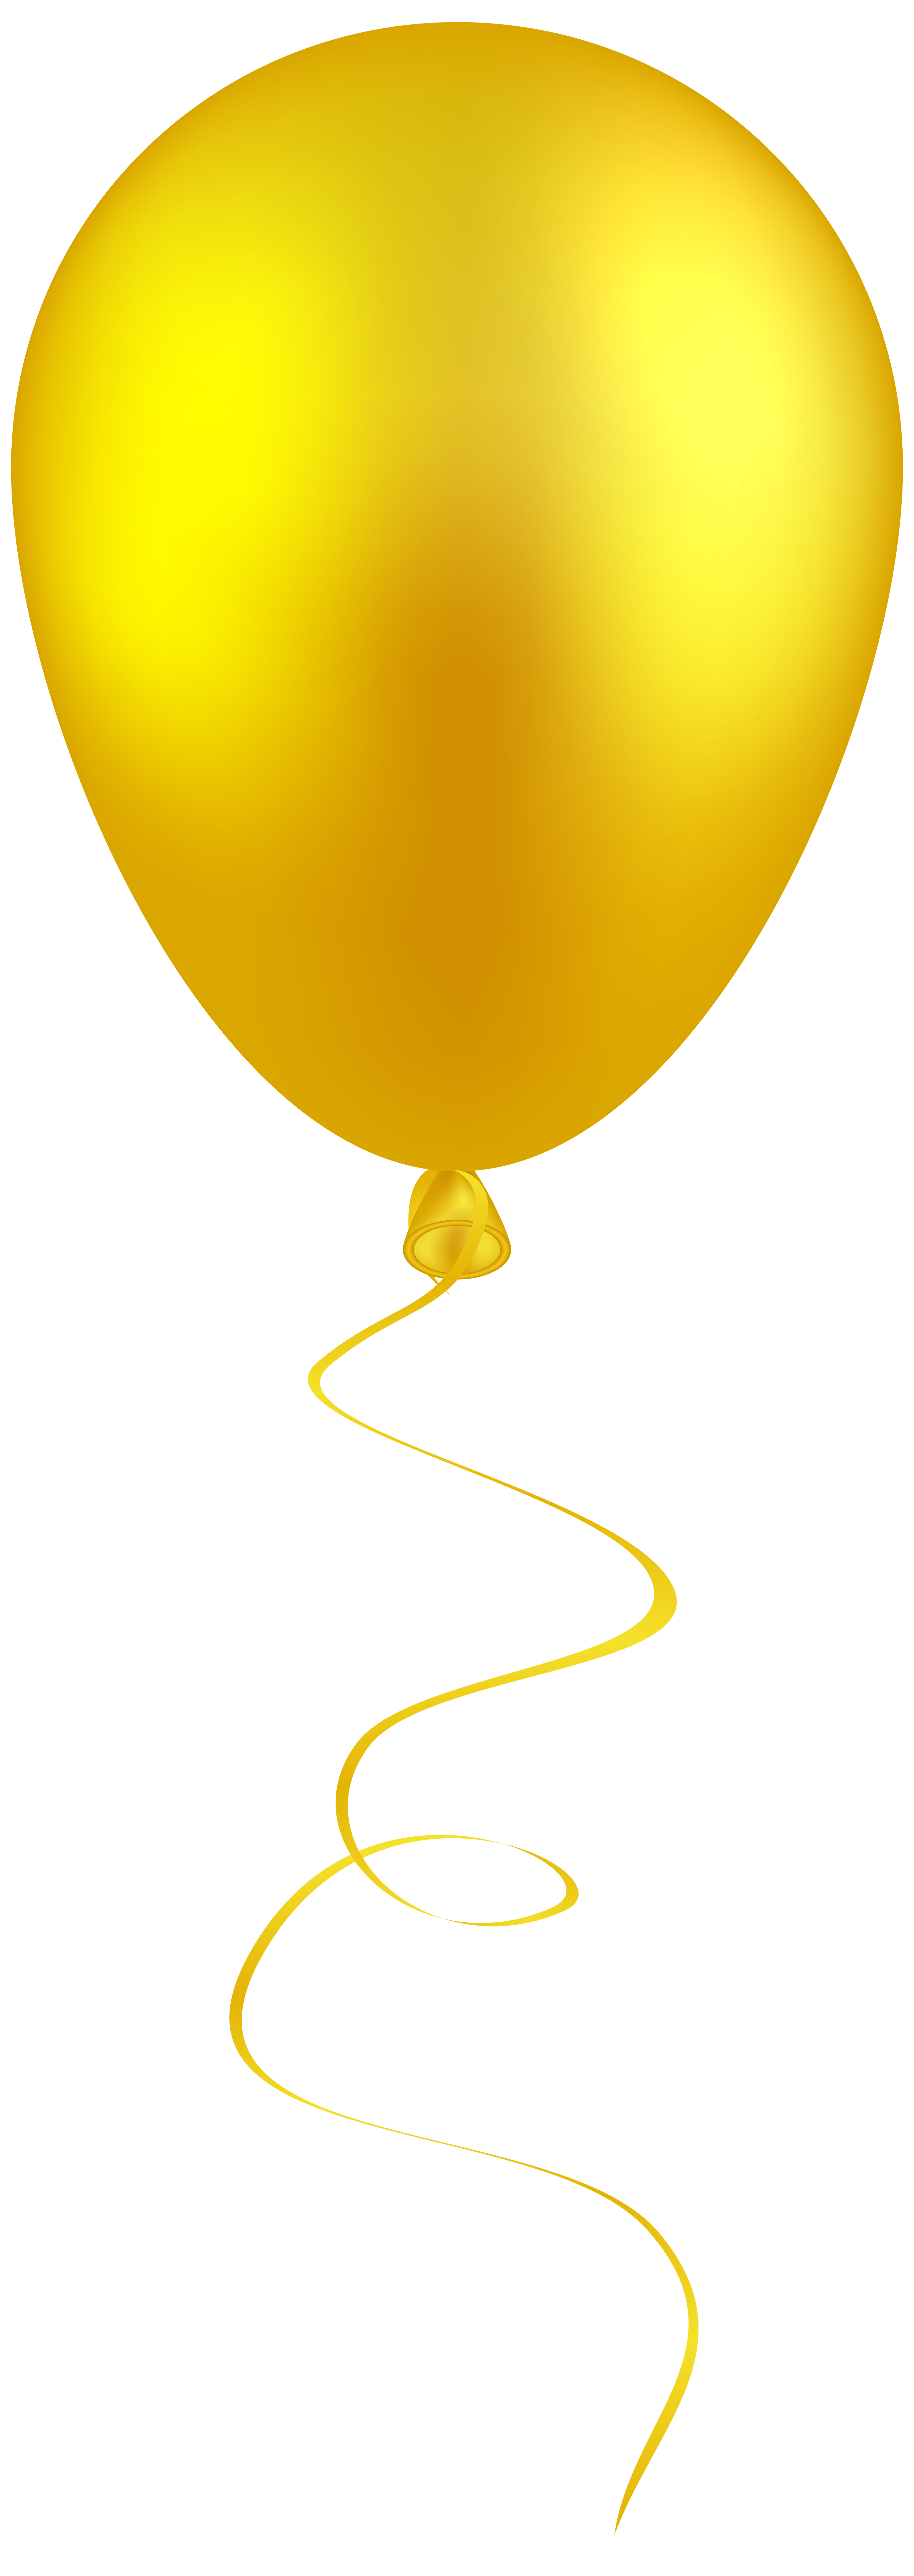 Yellow Balloon PNG Clip Art - Best WEB Clipart